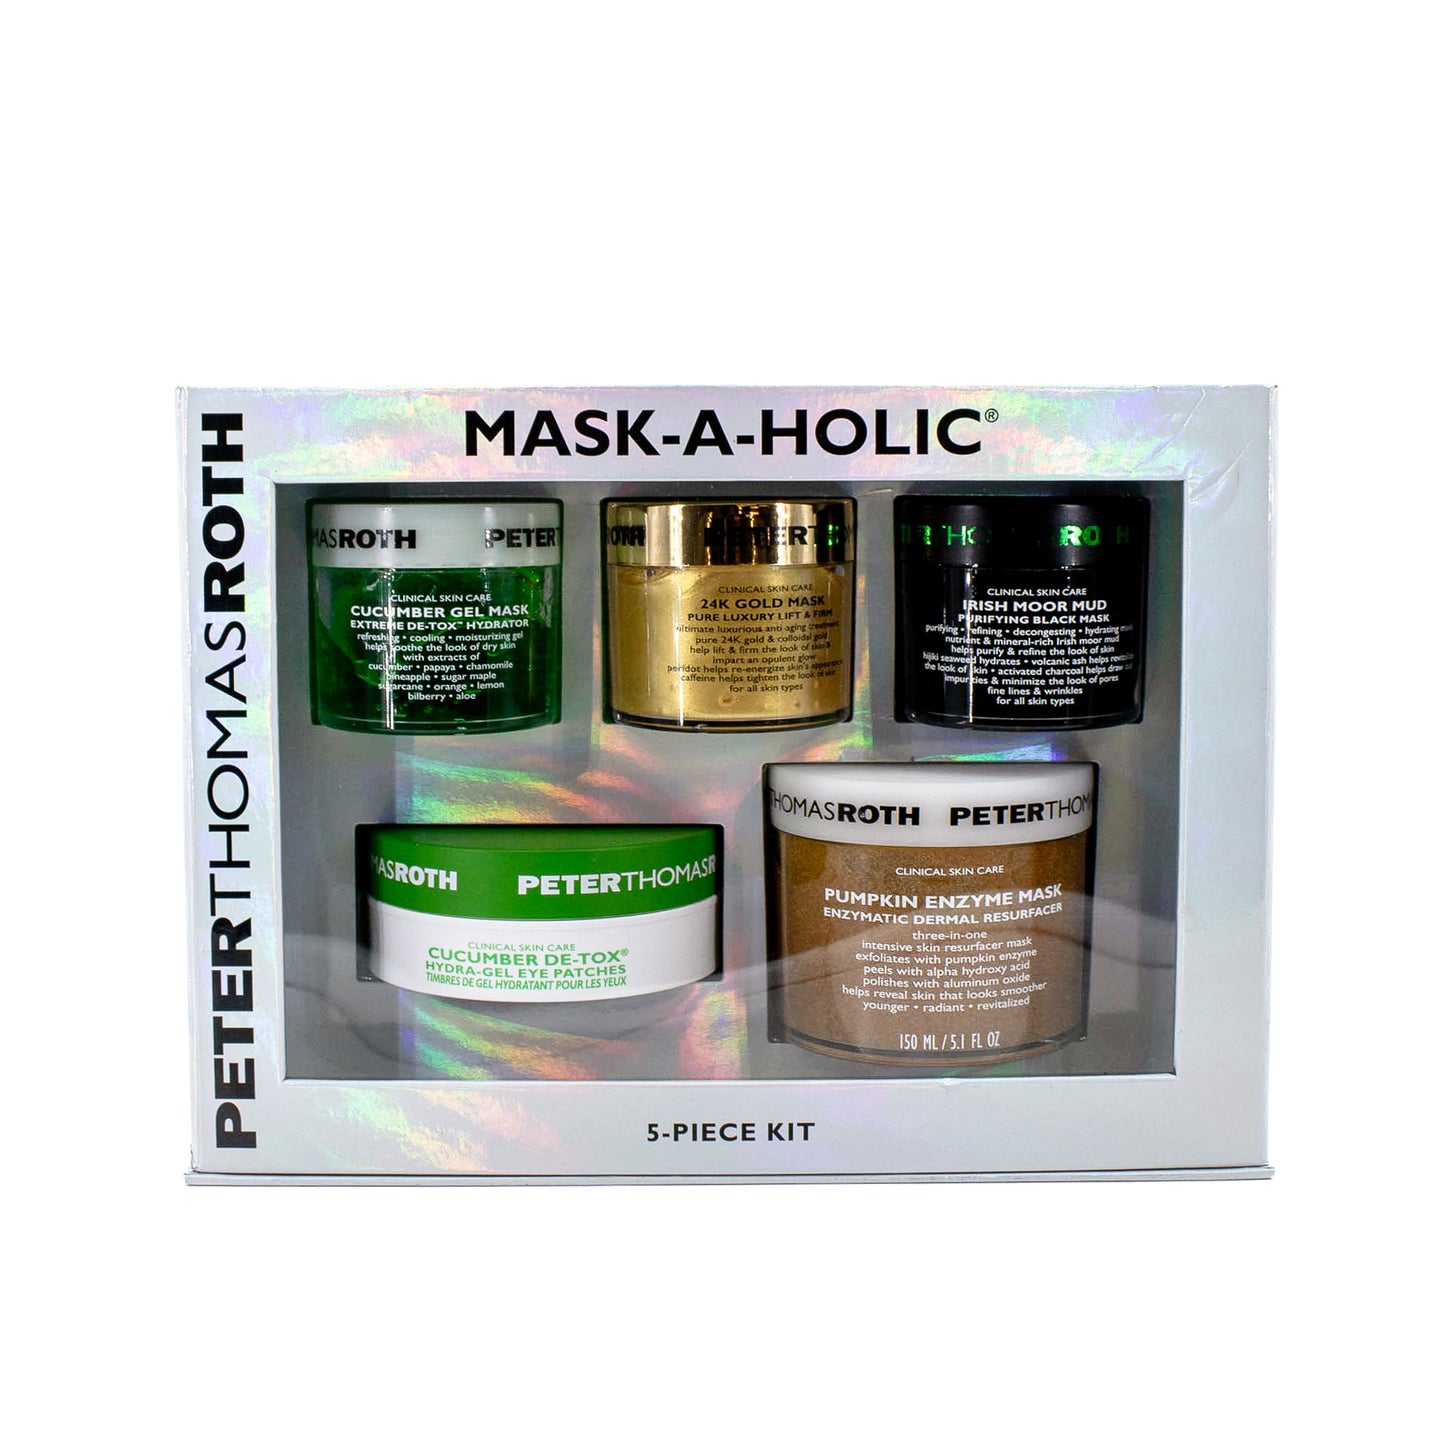 PETERTHOMASROTH Mask-a-Holic 5-Piece Kit - Imperfect Box